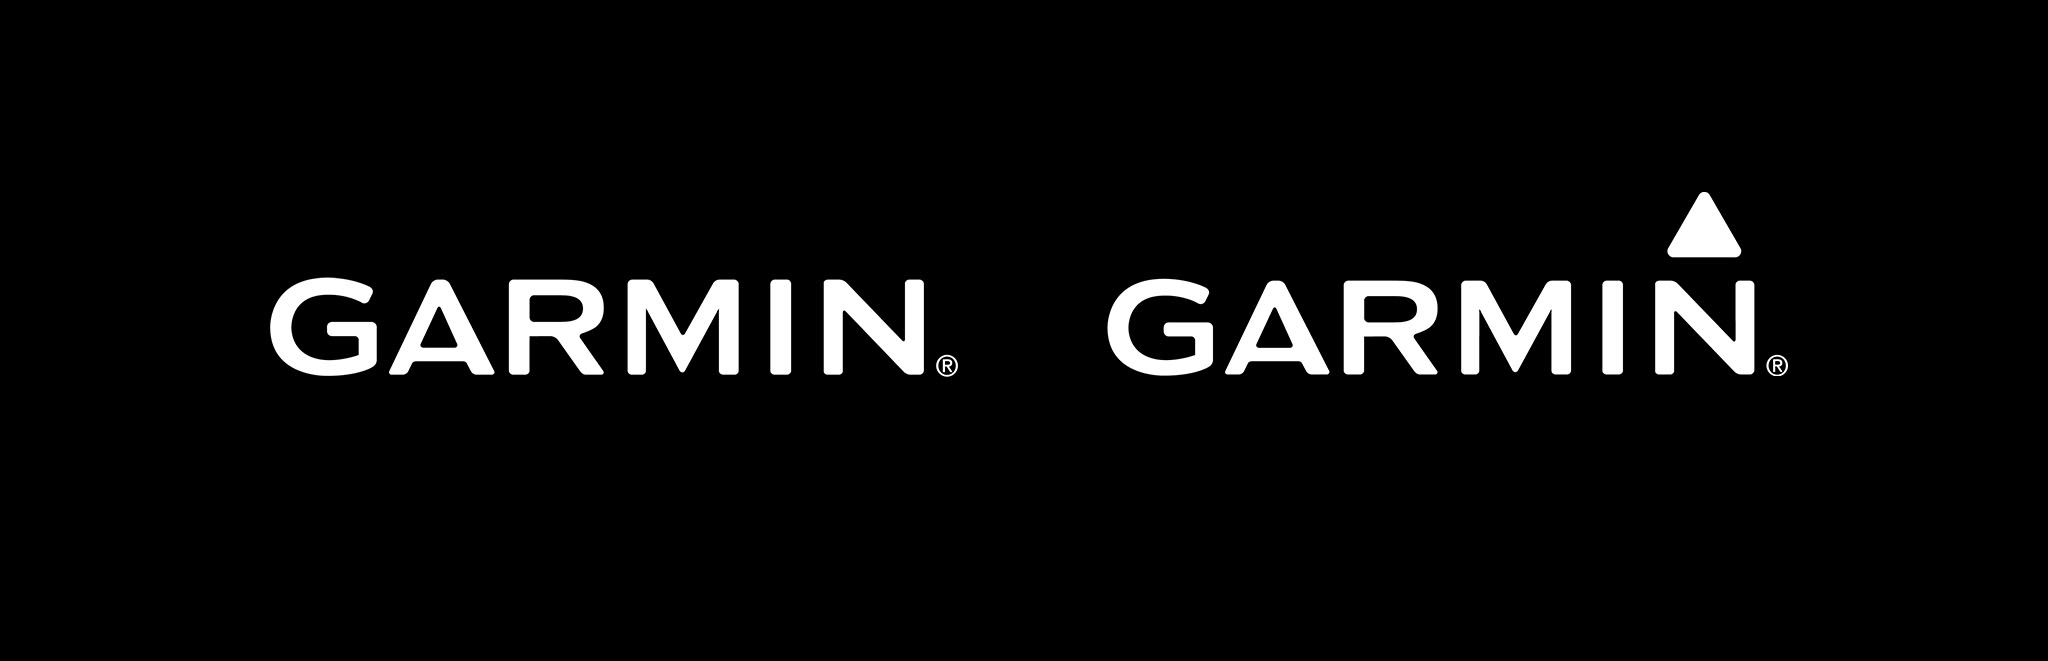 GARMIN Logos